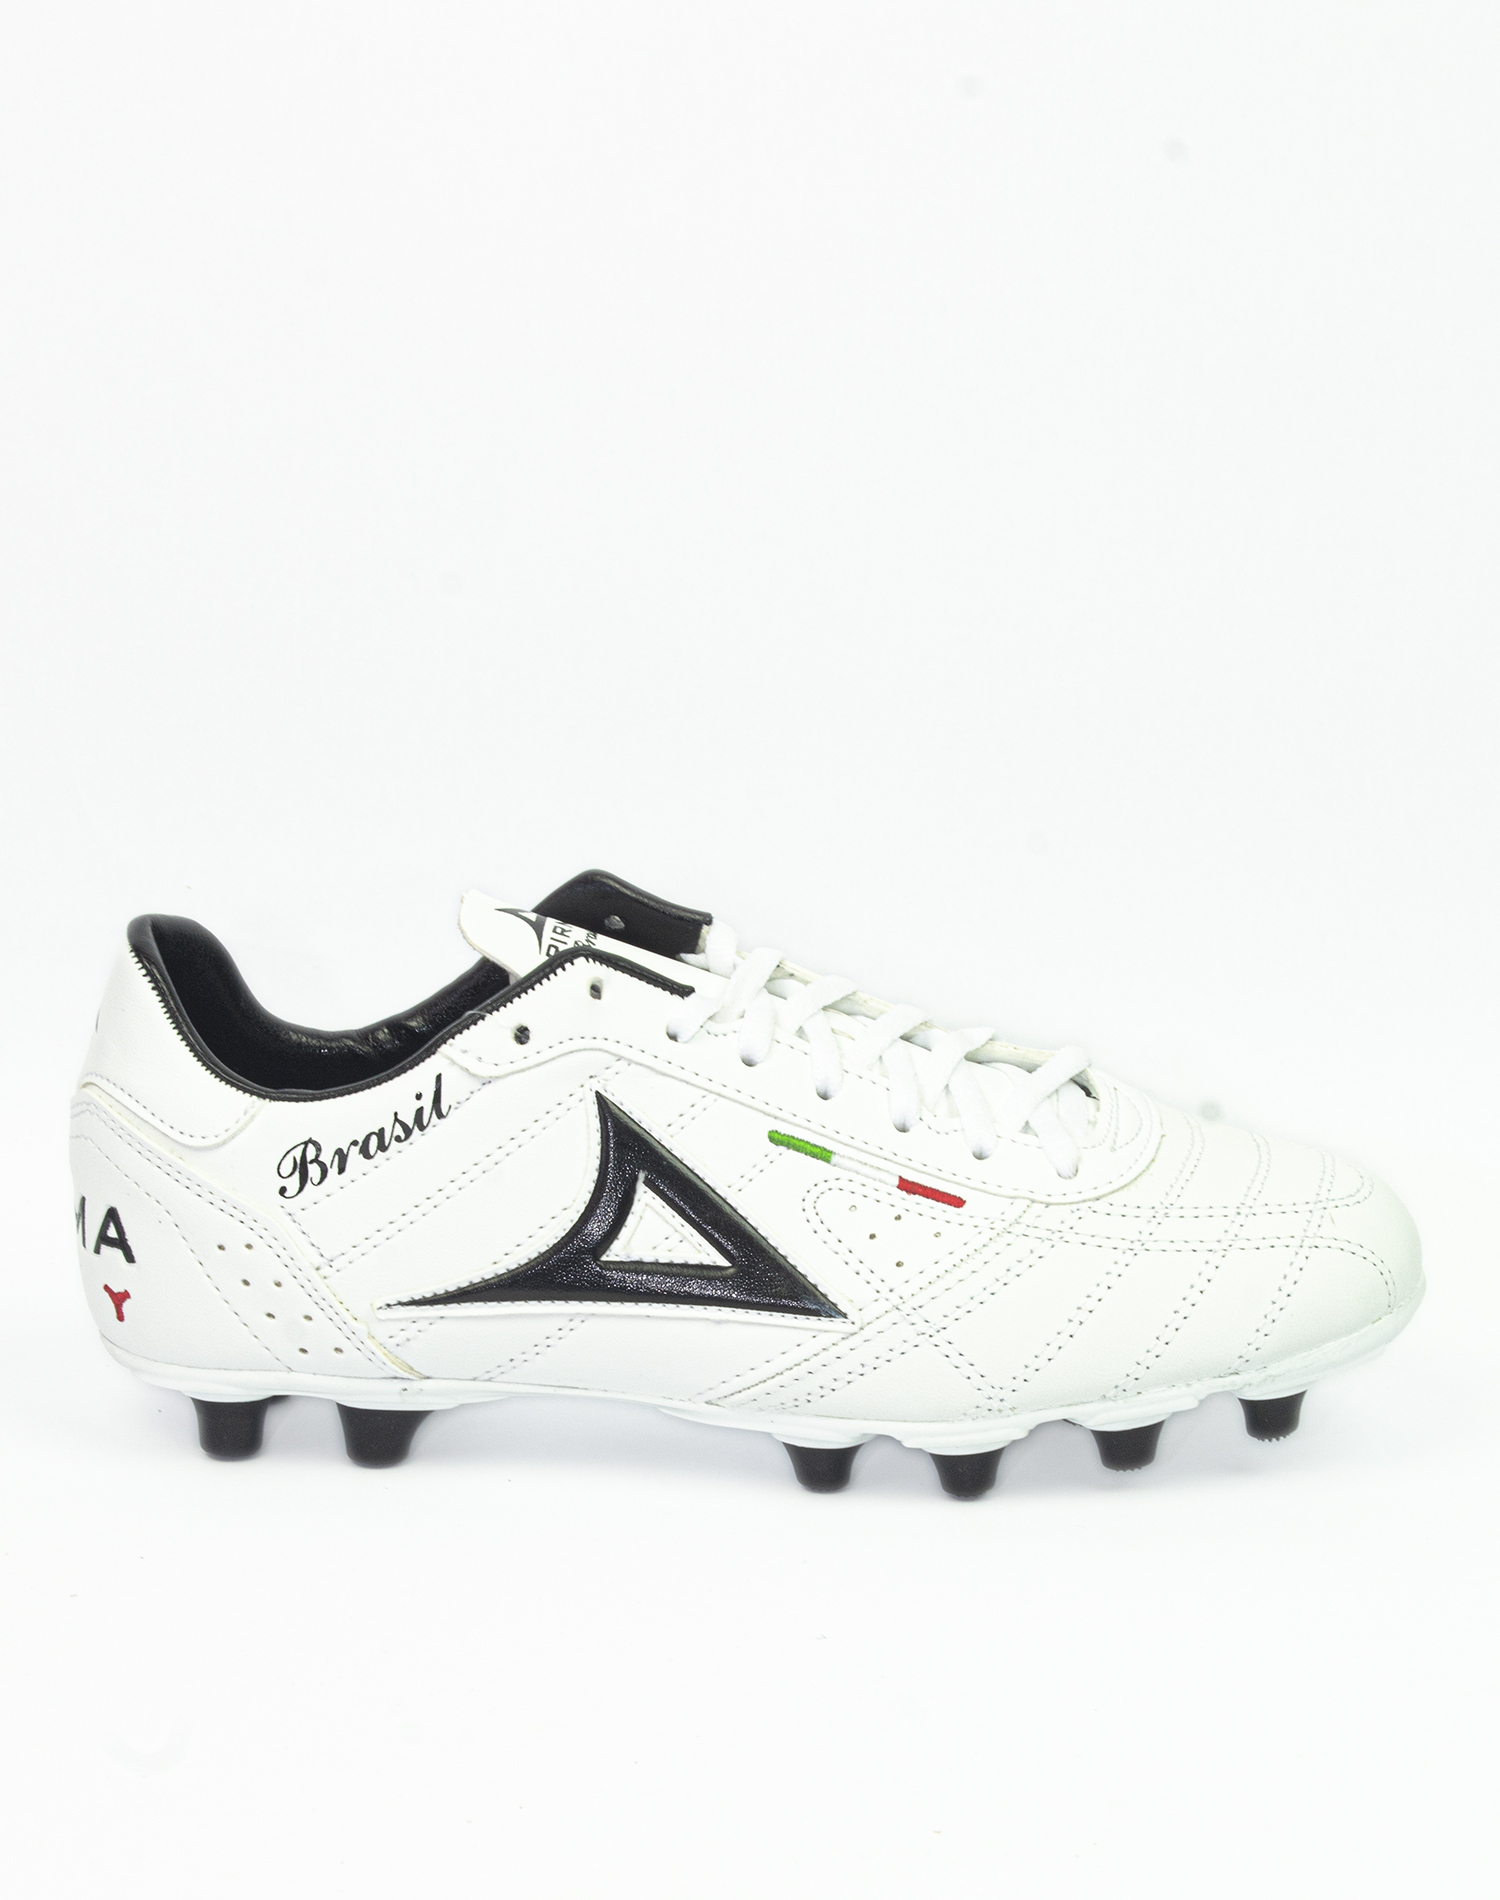 Zapatos de Futbol Pirma Brasil Modelo 0501 Piel Blanco - Golero